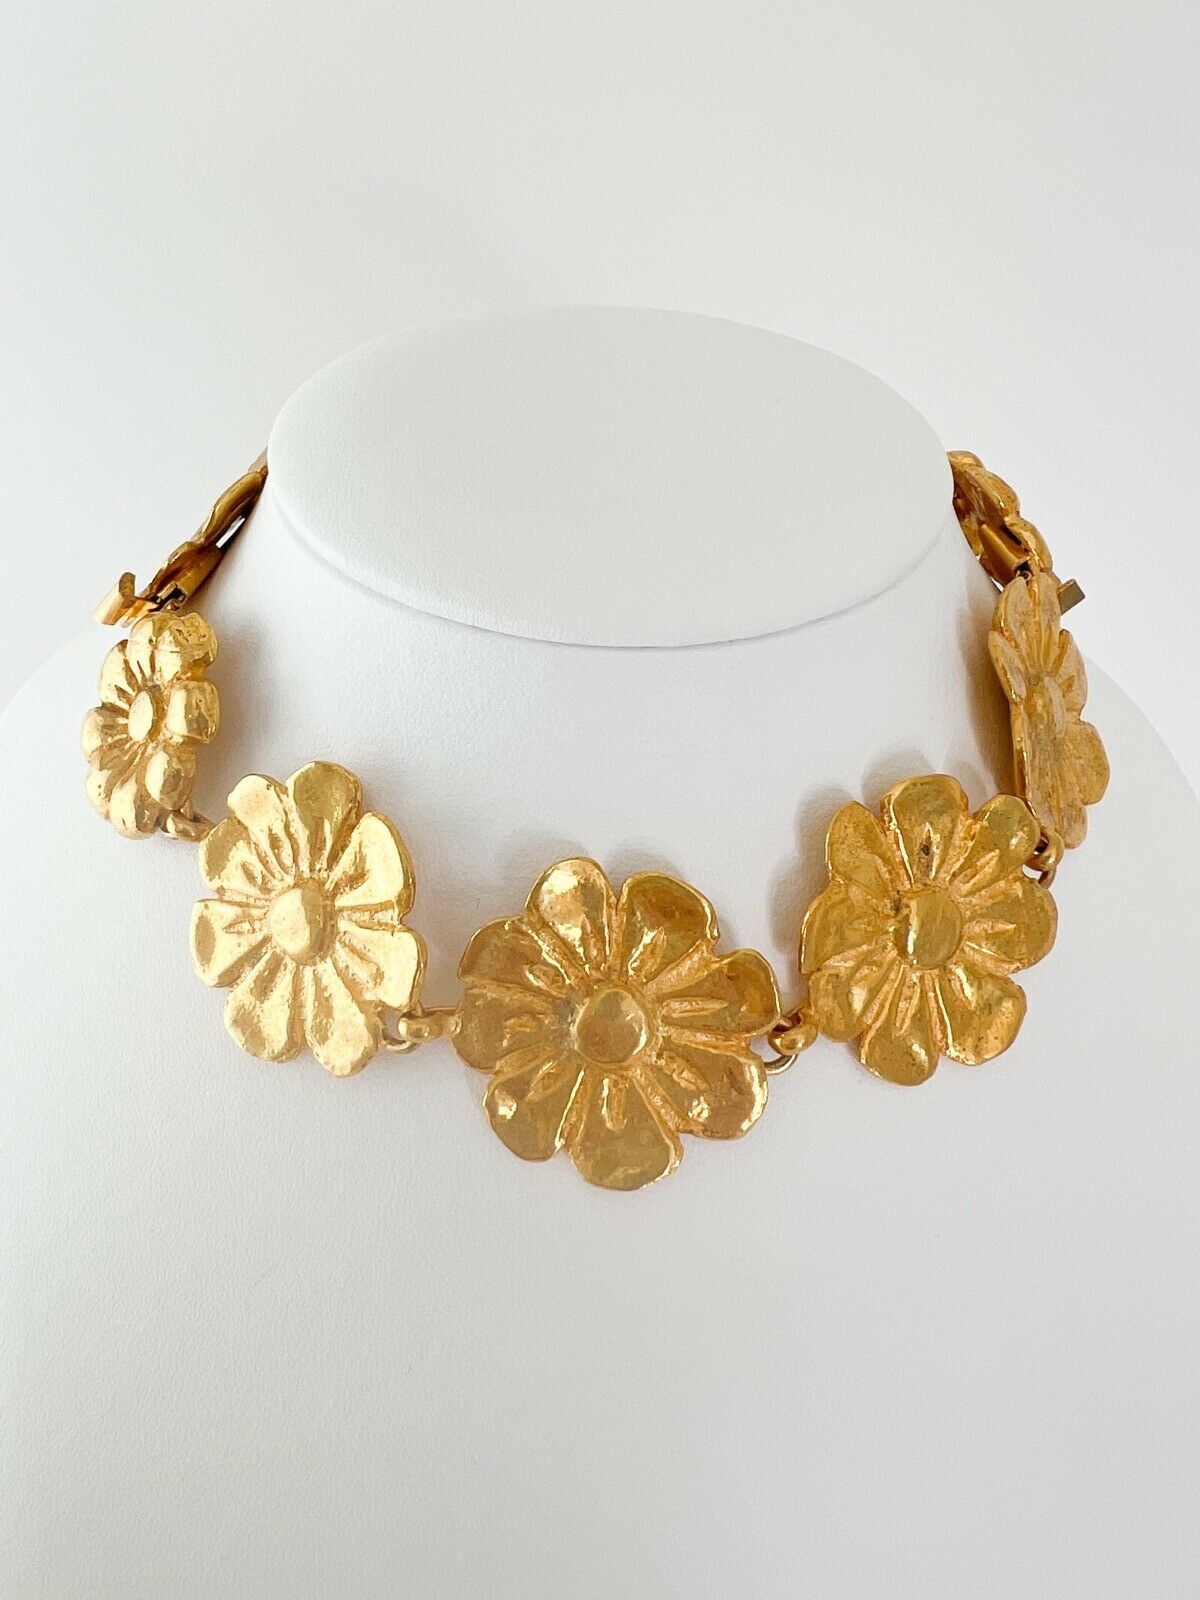 YSL Yves Saint Laurent Vintage Necklace Bracelet Floral Made in France